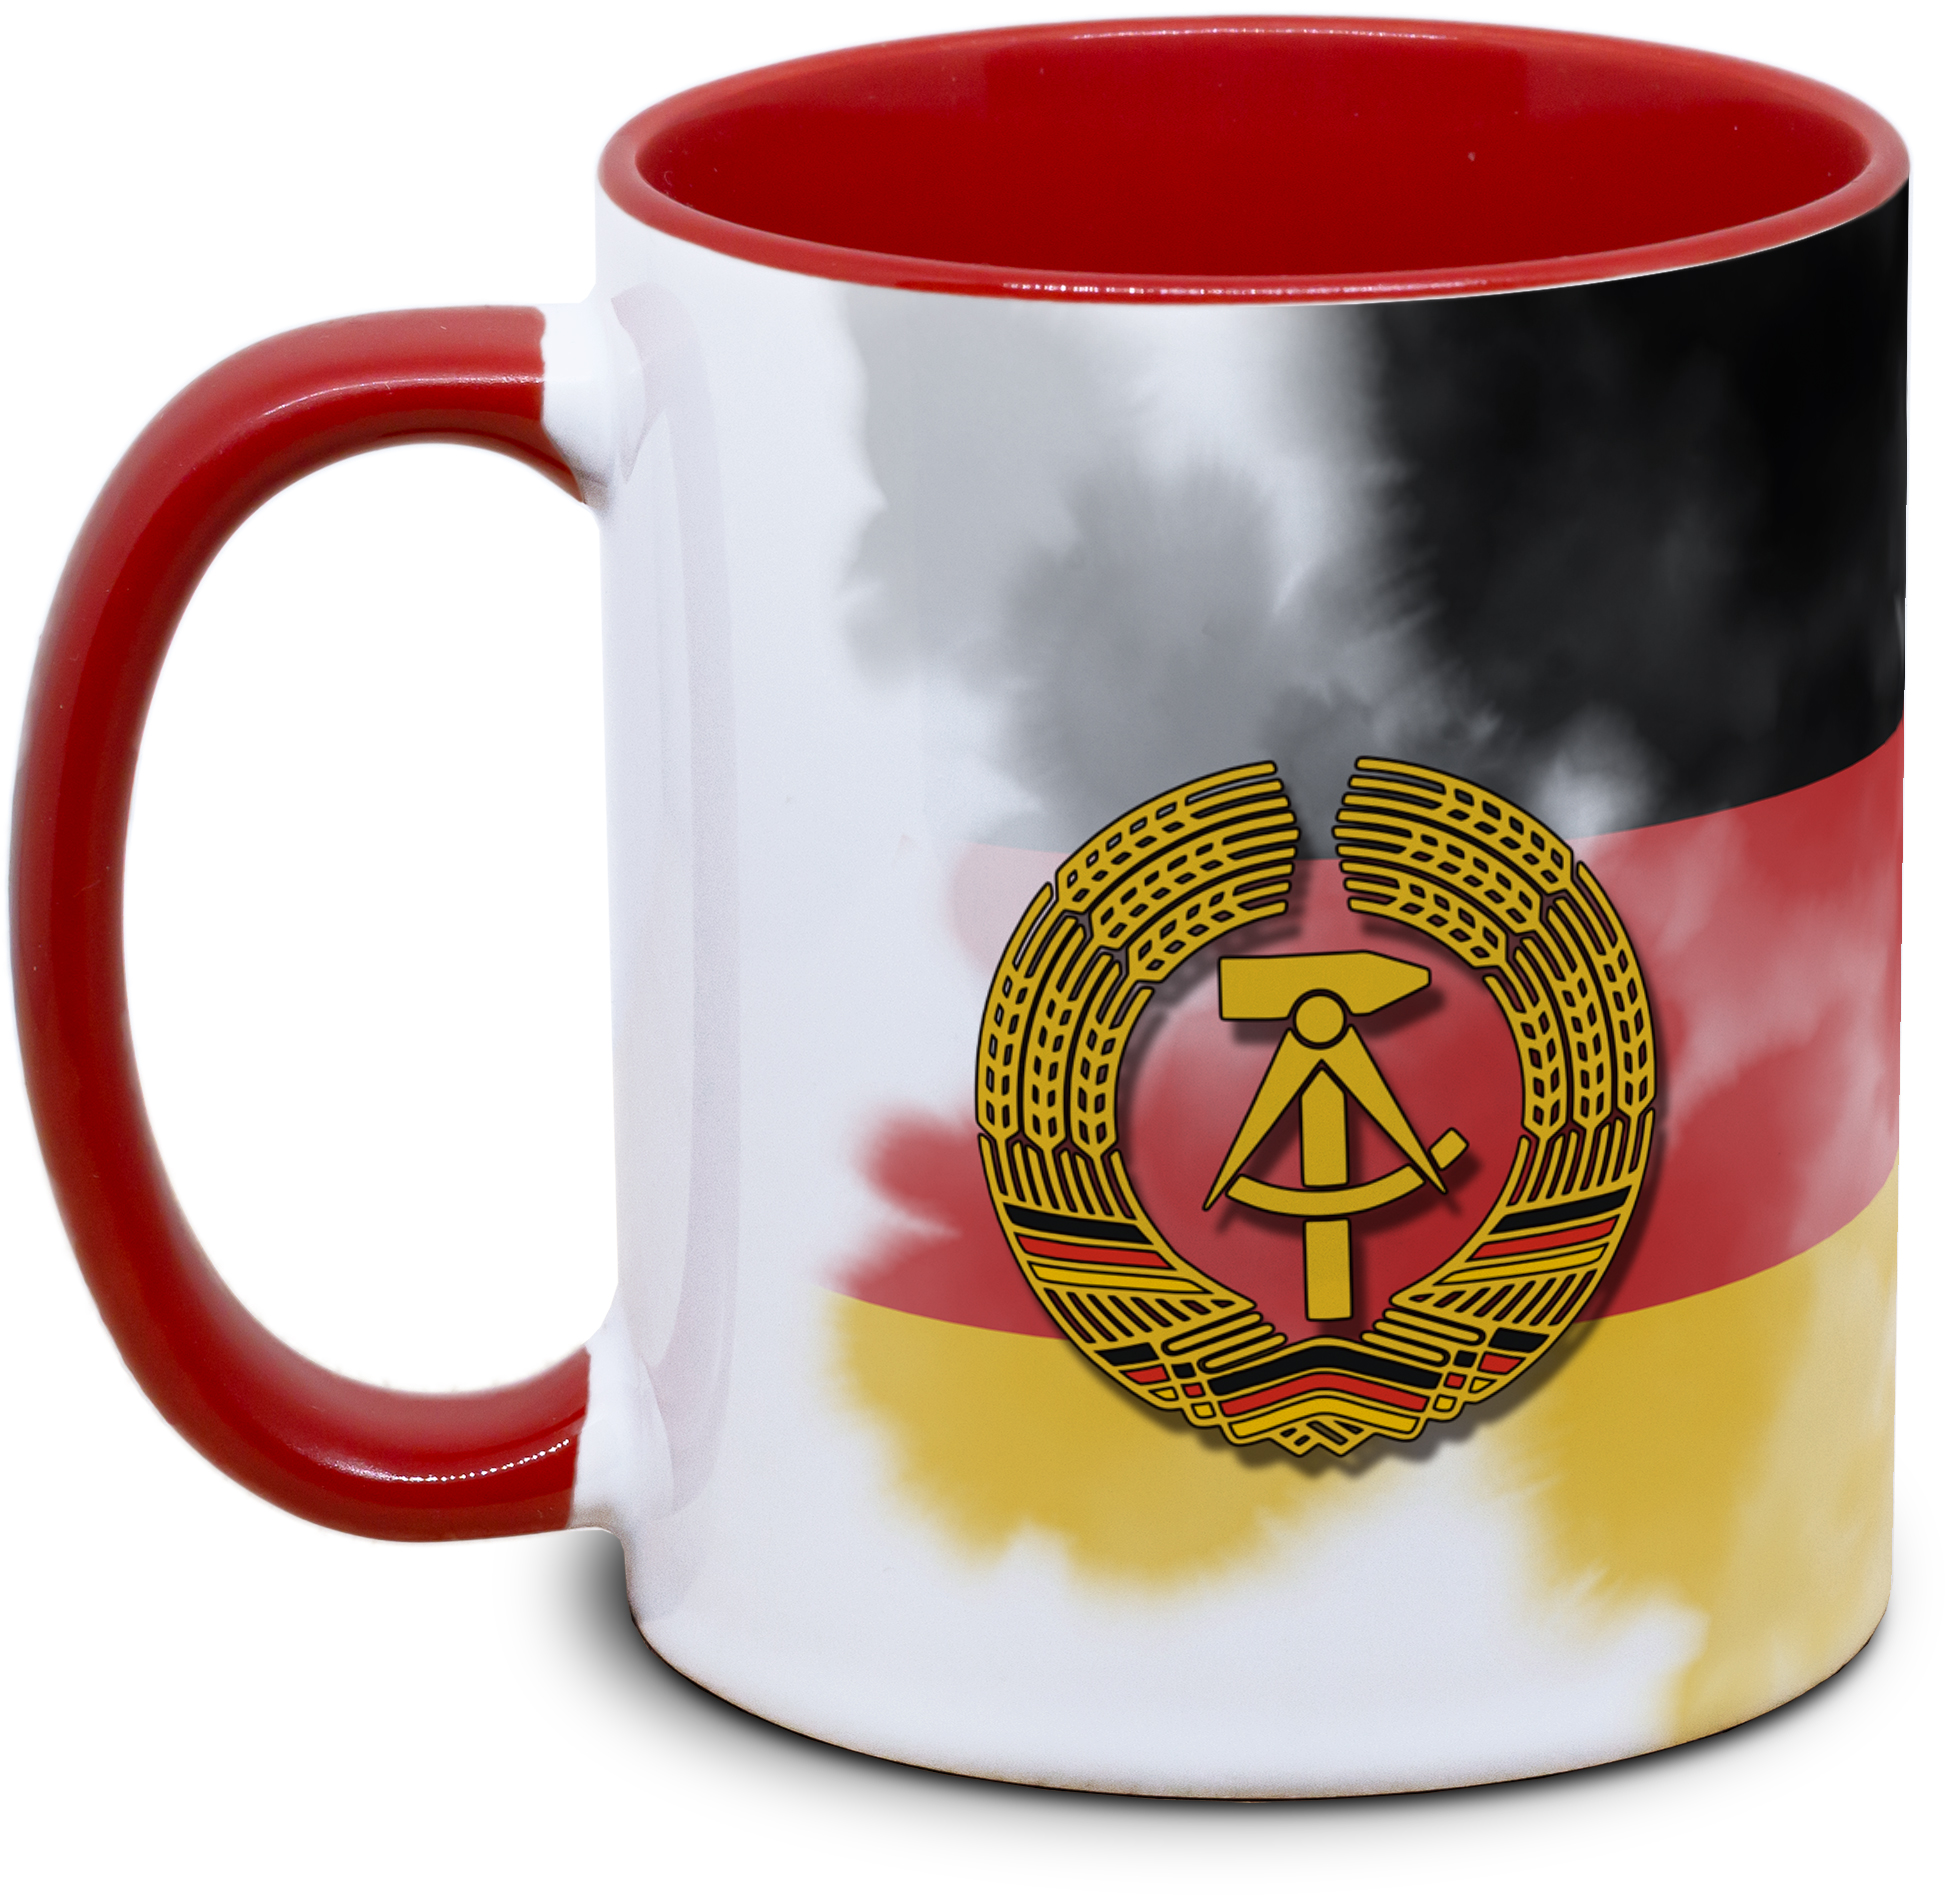 Tasse mit DDR-Fahne